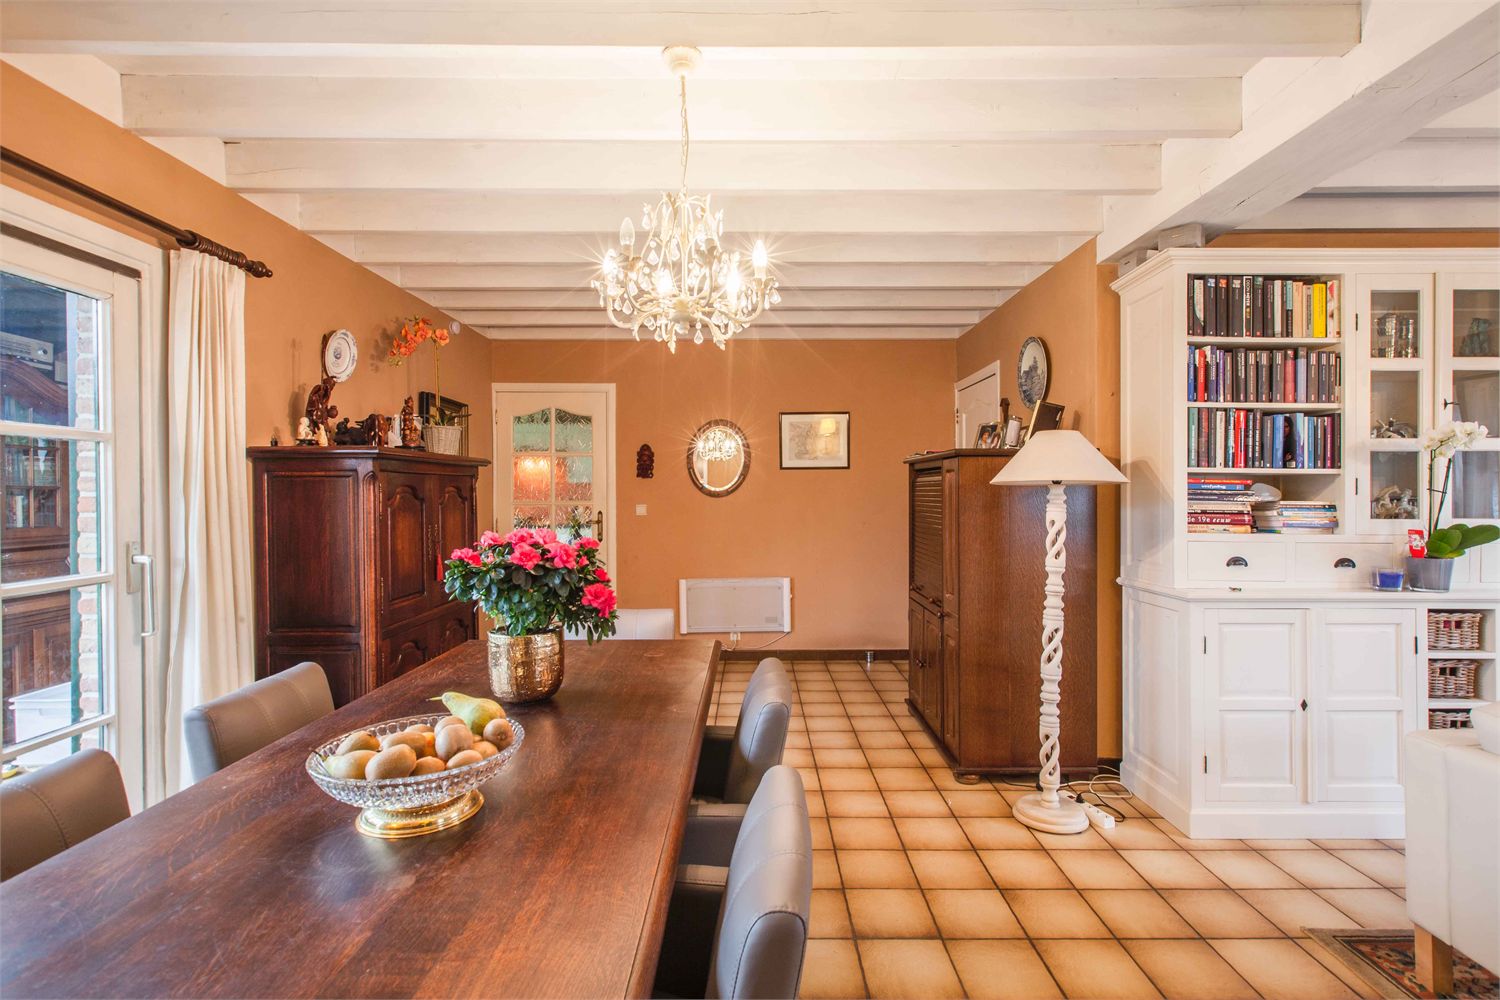 Villa verkocht in Gentbrugge